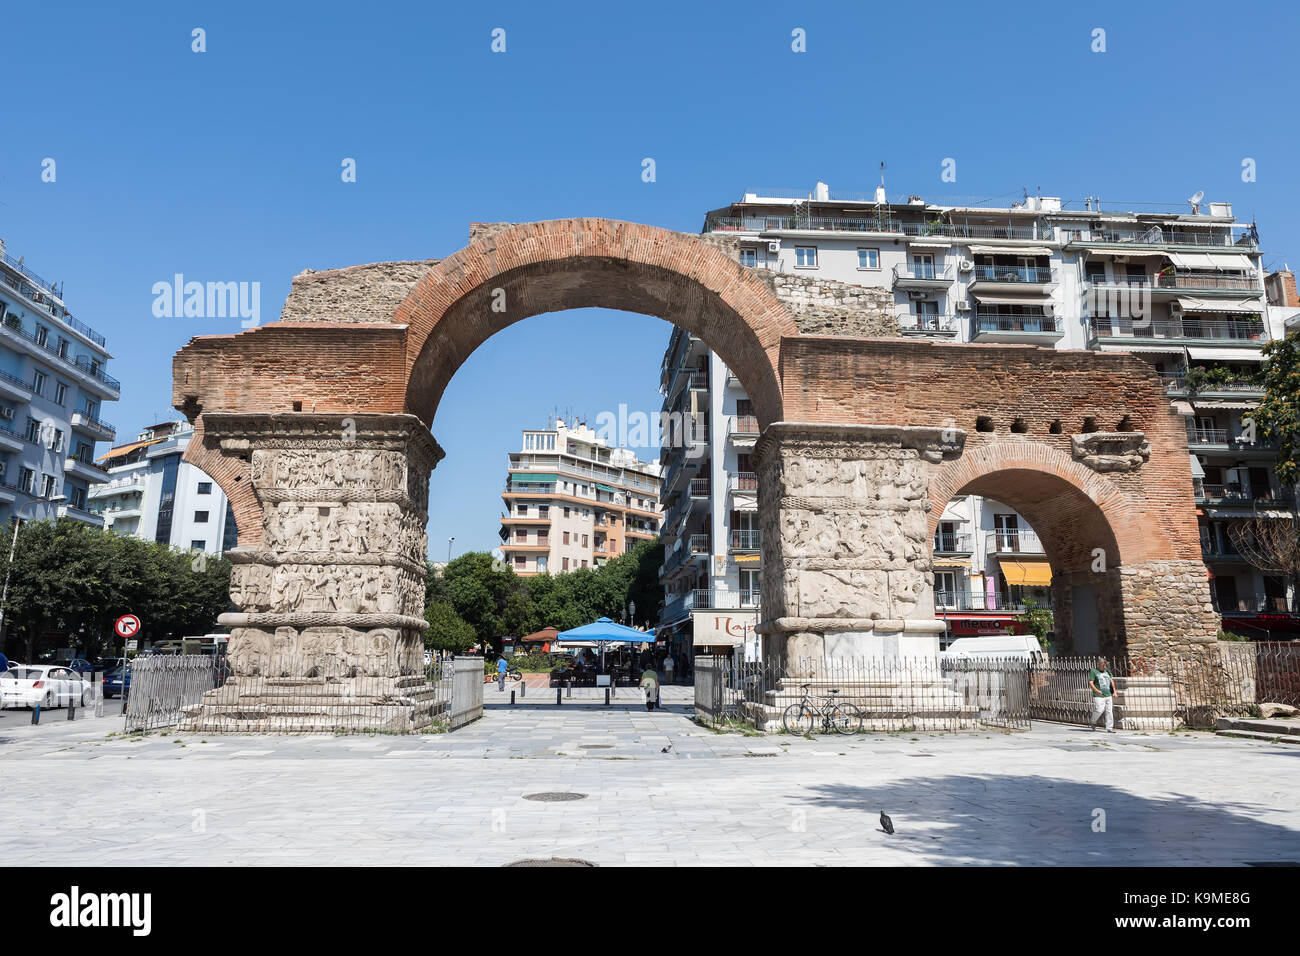 Thessalonique, Grèce - 20 juillet 2017 : l'Arc de Galère (ou Kamara) est un monument du 3ème siècle dans la ville de Thessalonique, dans la région d'Asie centrale Banque D'Images